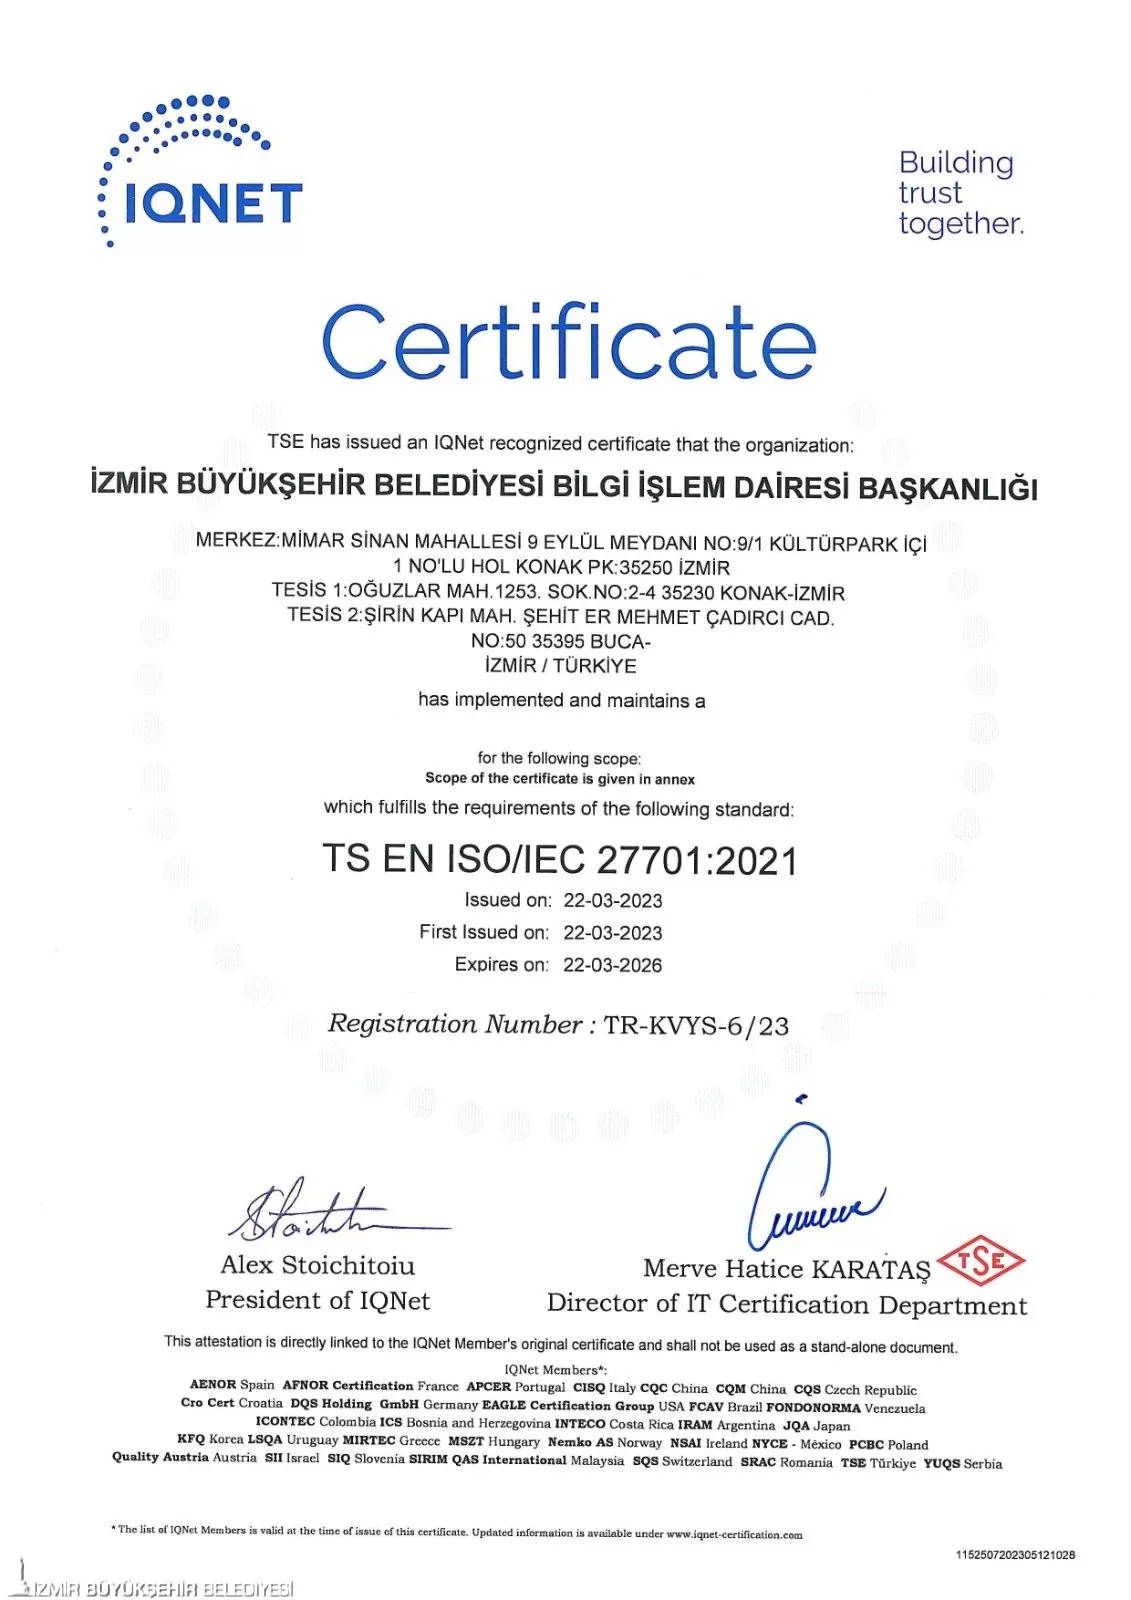 İzmir Büyükşehir Belediyesi, uluslararası ISO 27701 Kişisel Veri Güvenliği Standardını kazanarak bu unvanı alan ilk Büyükşehir Belediyesi oldu.